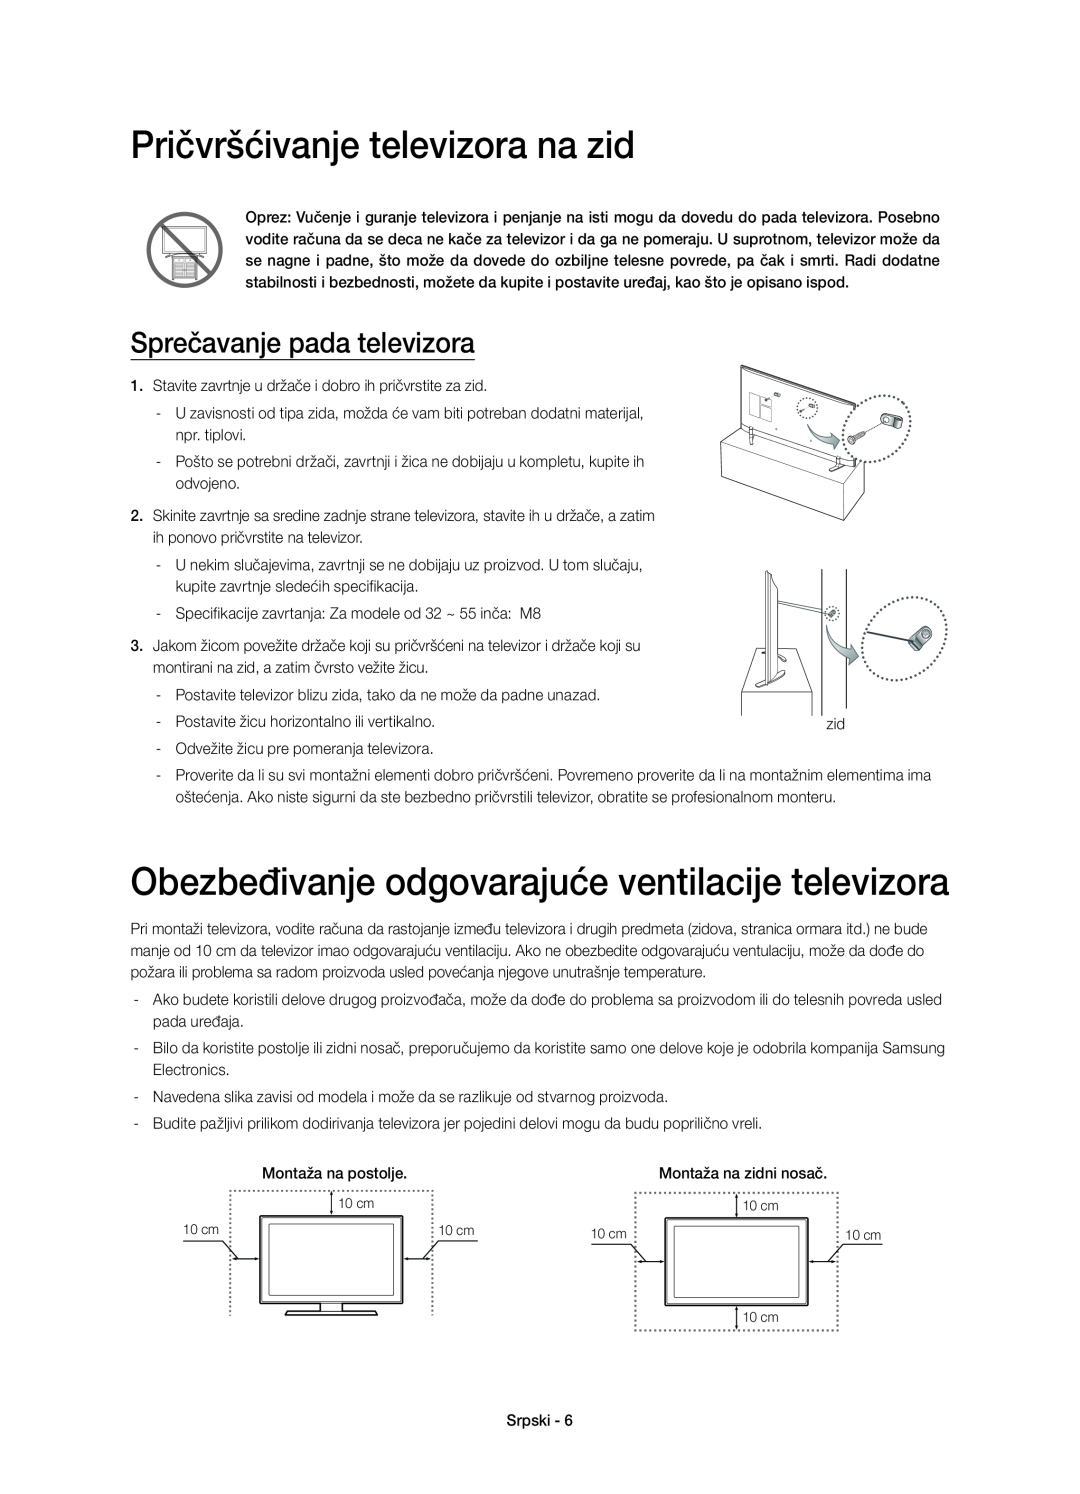 Samsung UE40H6410SSXXC, UE55H6410SSXXH Pričvršćivanje televizora na zid, Obezbeđivanje odgovarajuće ventilacije televizora 